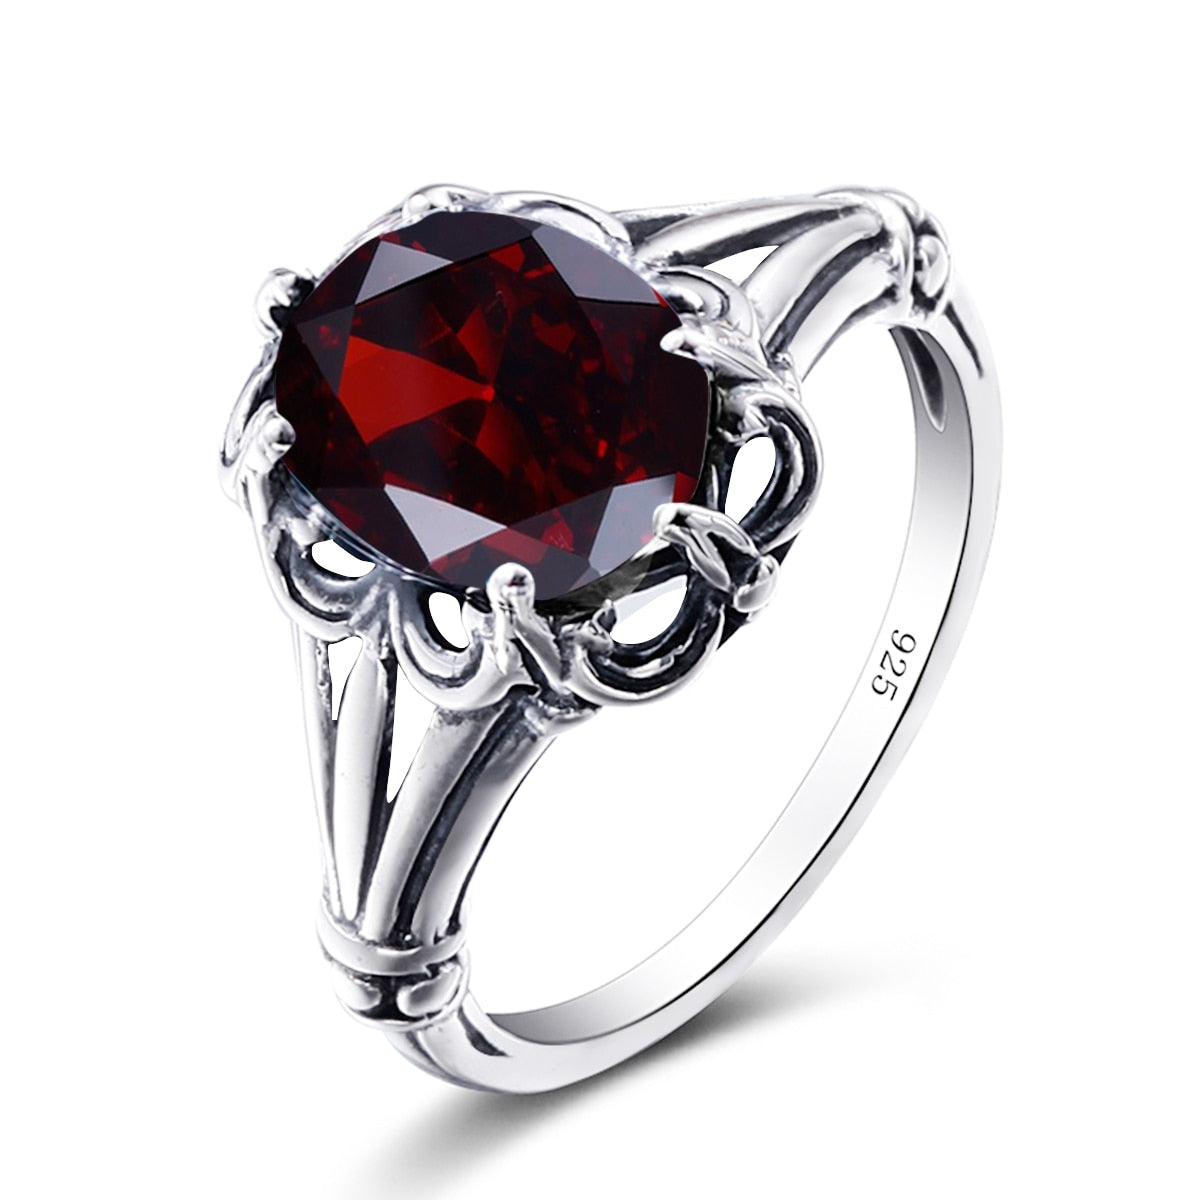 100% 925 Sterling Silver Rings Oval Design Garnet Bohemian Handmade Victoria Wieck Rings For Women Fine Jewelry Garnet